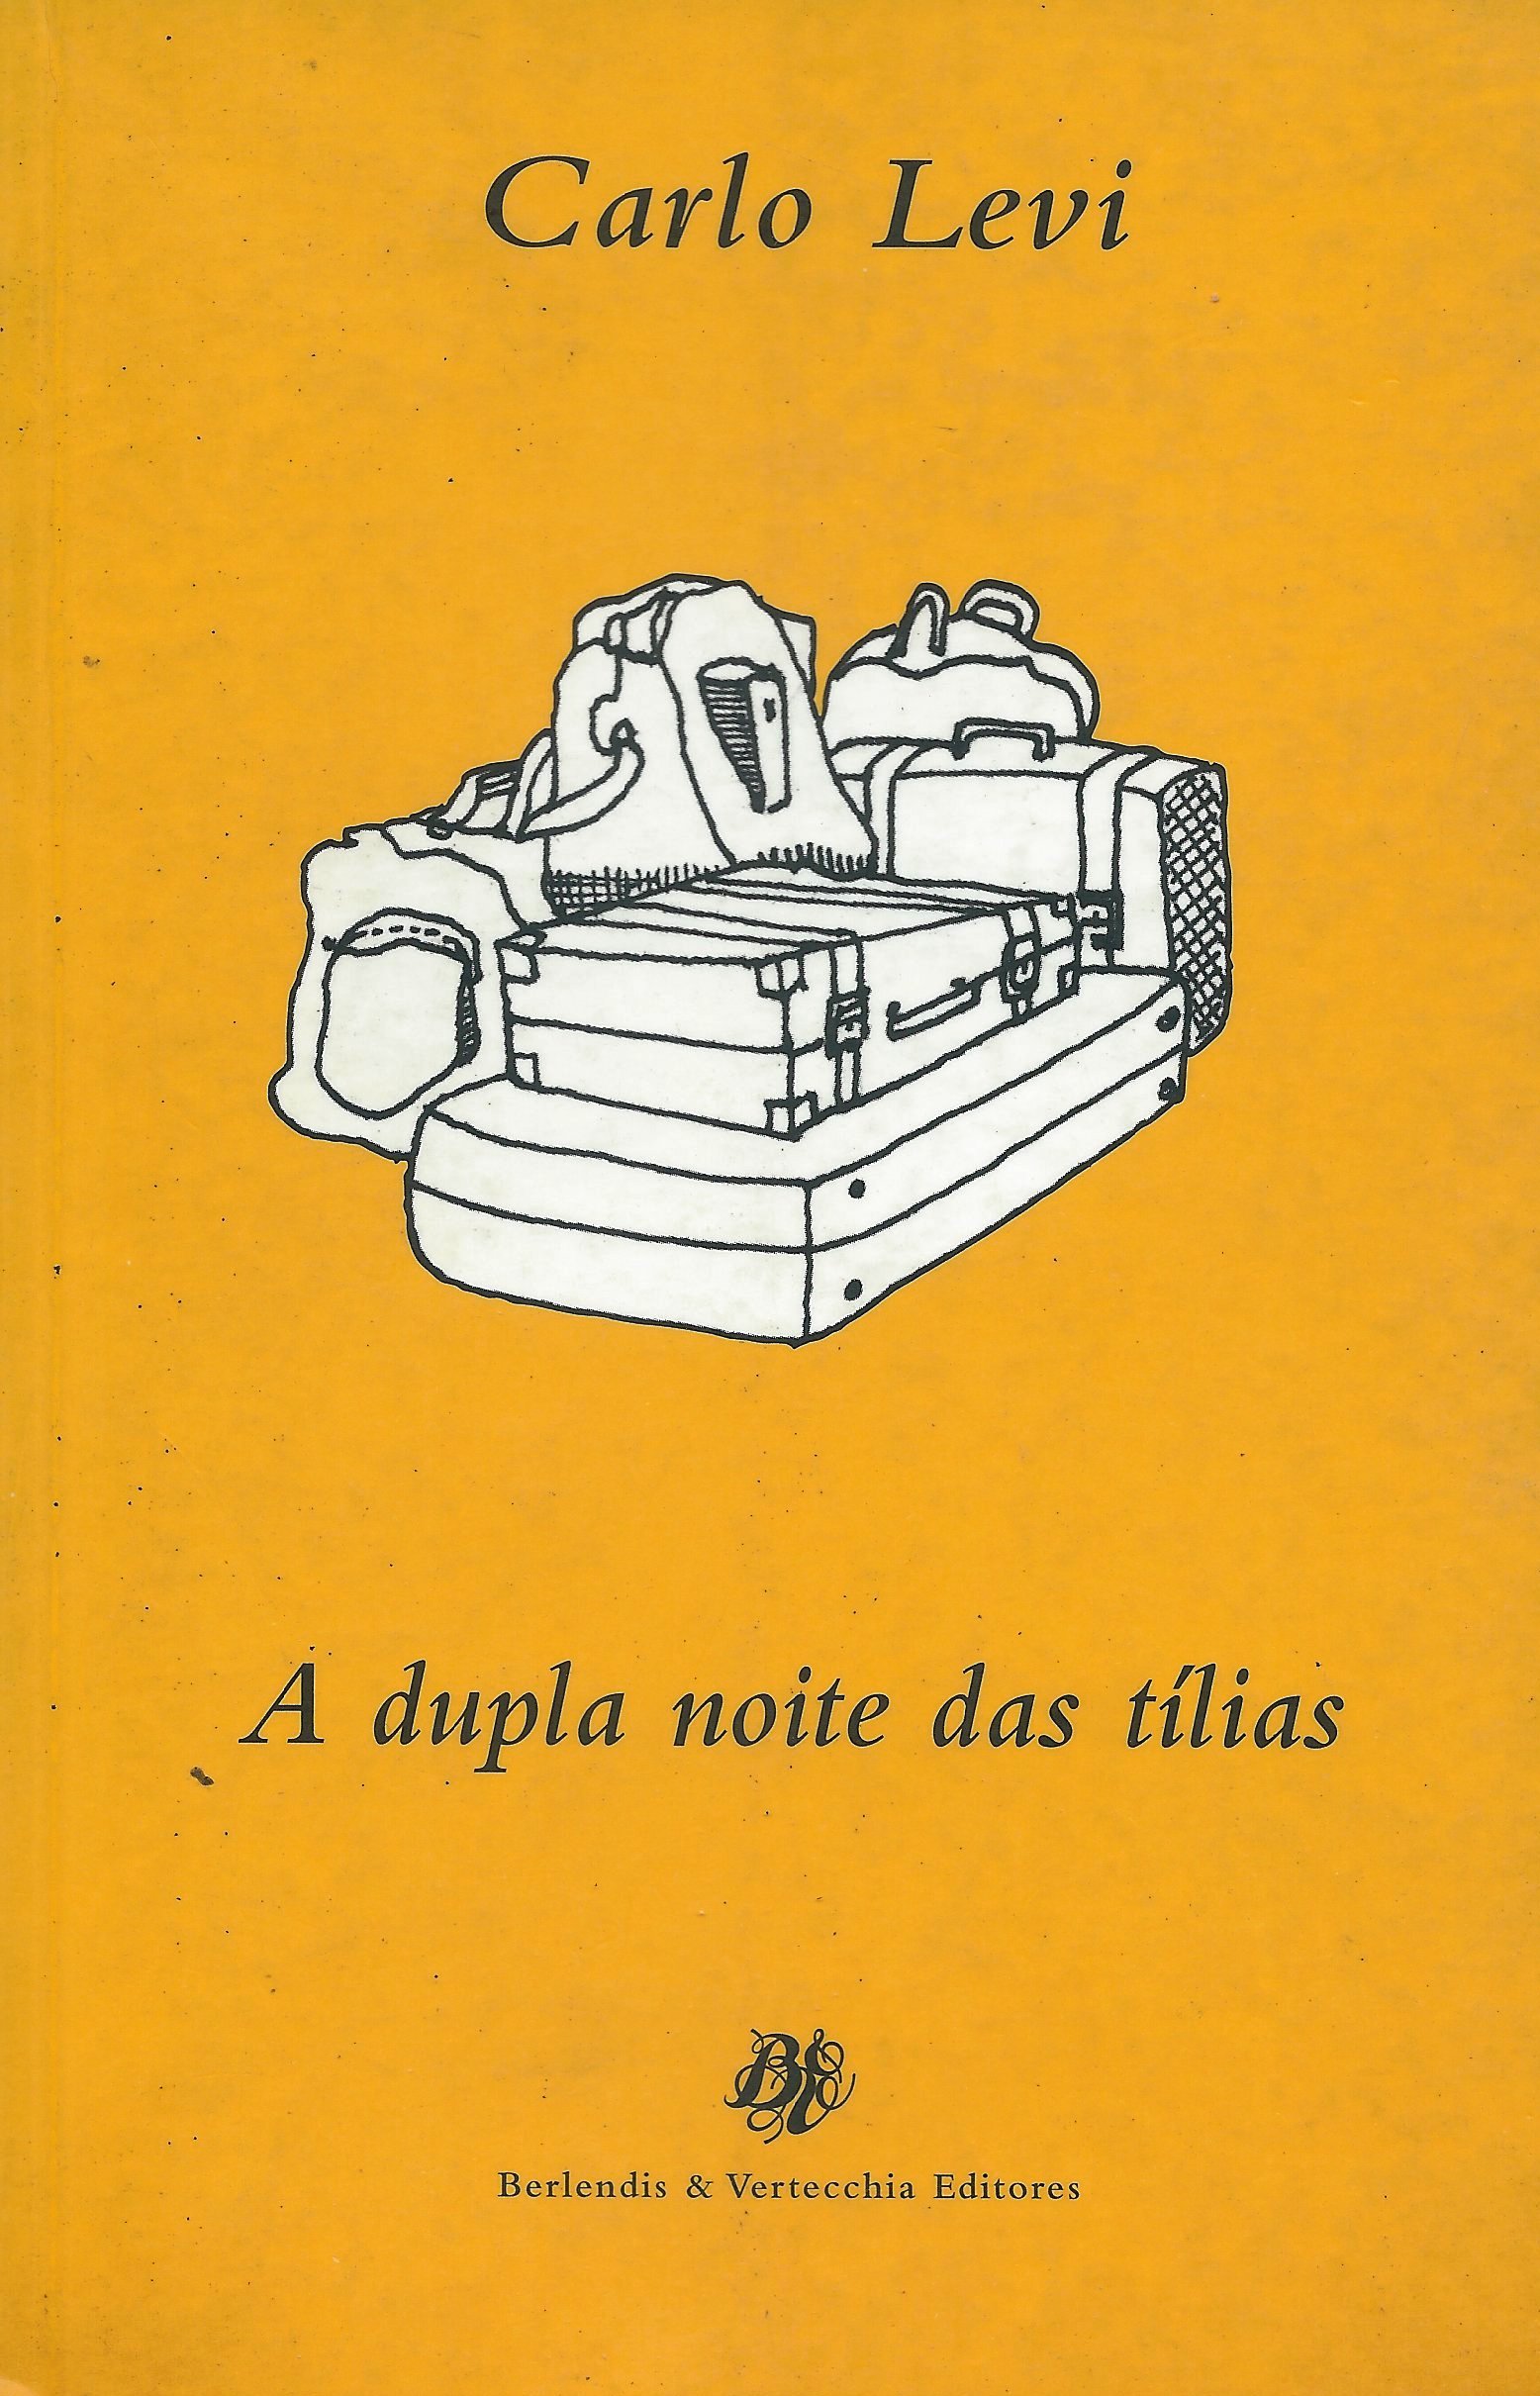 https://www.literaturabrasileira.ufsc.br/_images/obras/a_duola_noite_das_tilias.jpg